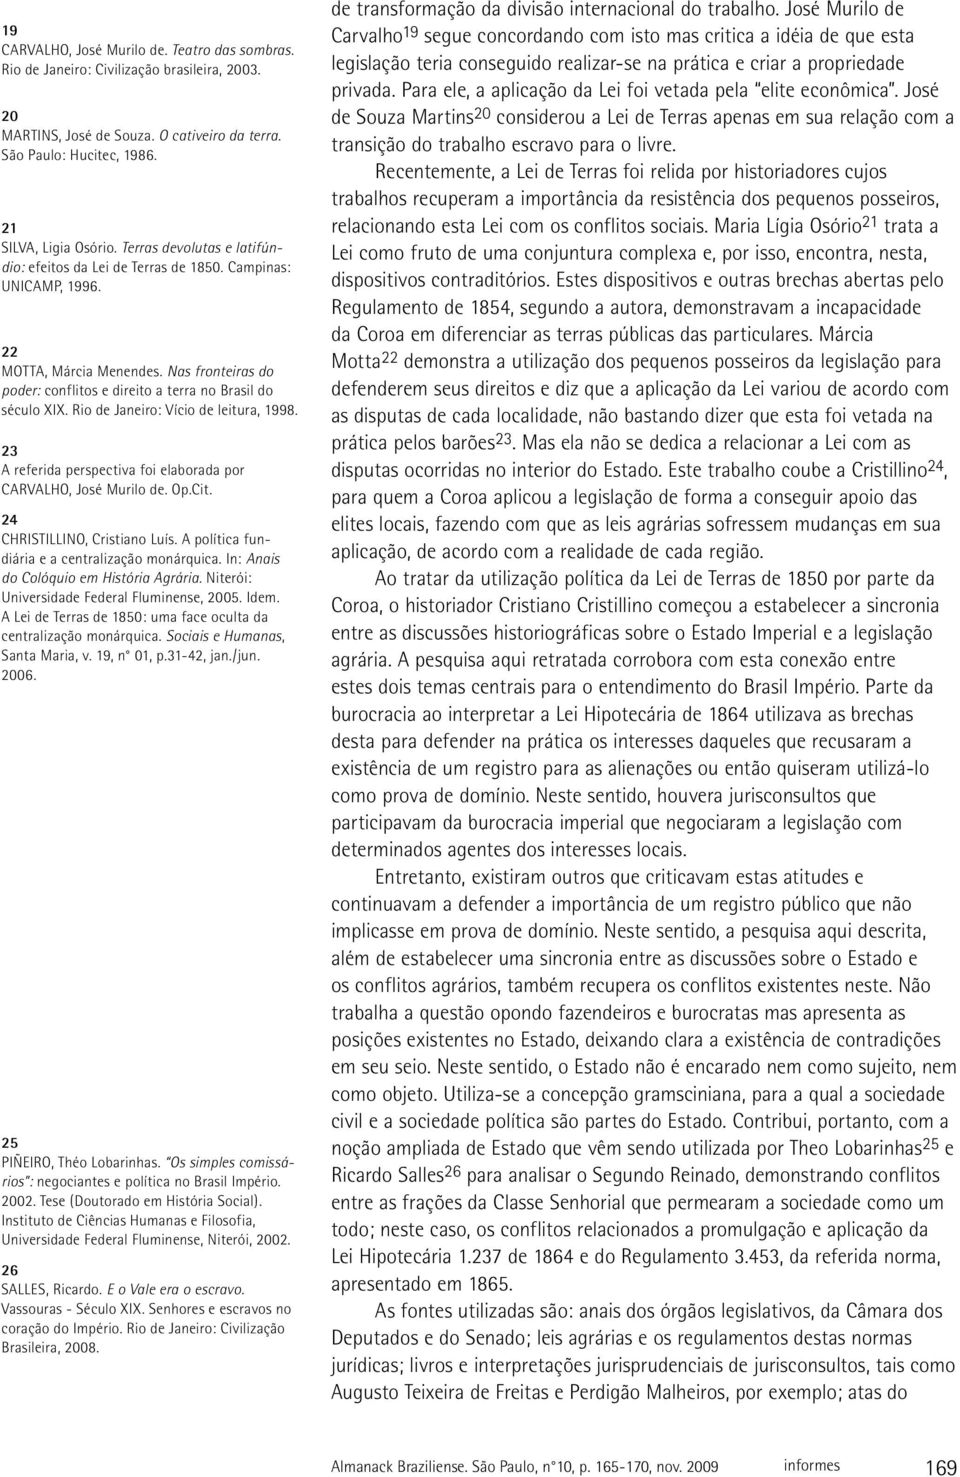 Rio de Janeiro: Vício de leitura, 1998. 23 A referida perspectiva foi elaborada por CARVALHO, José Murilo de. Op.Cit. 24 CHRISTILLINO, Cristiano Luís.